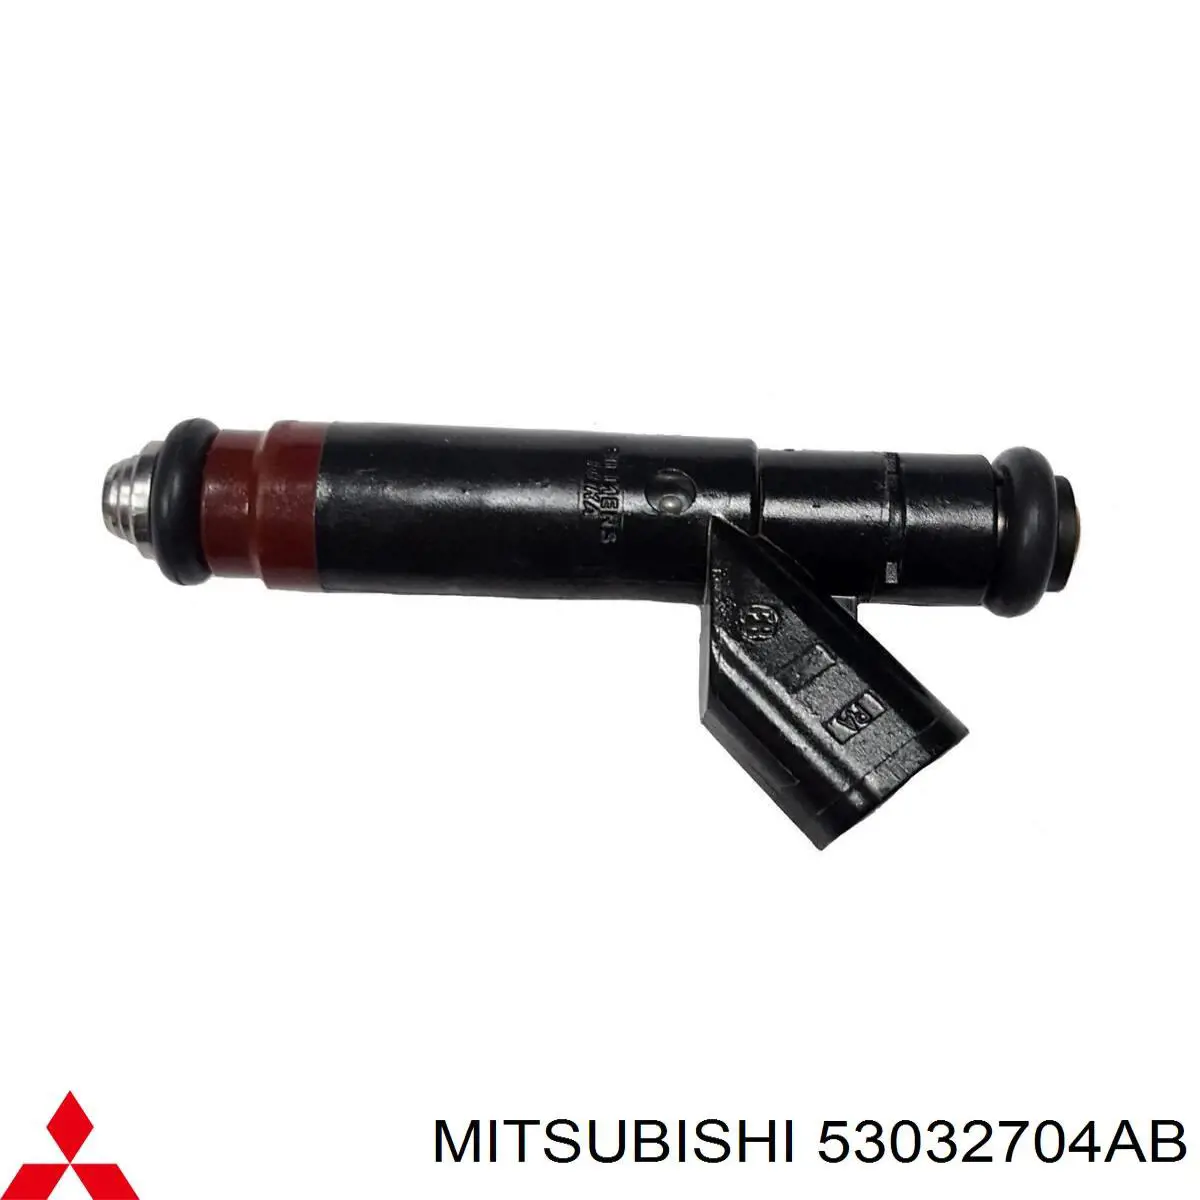 53032704AB Mitsubishi injetor de injeção de combustível